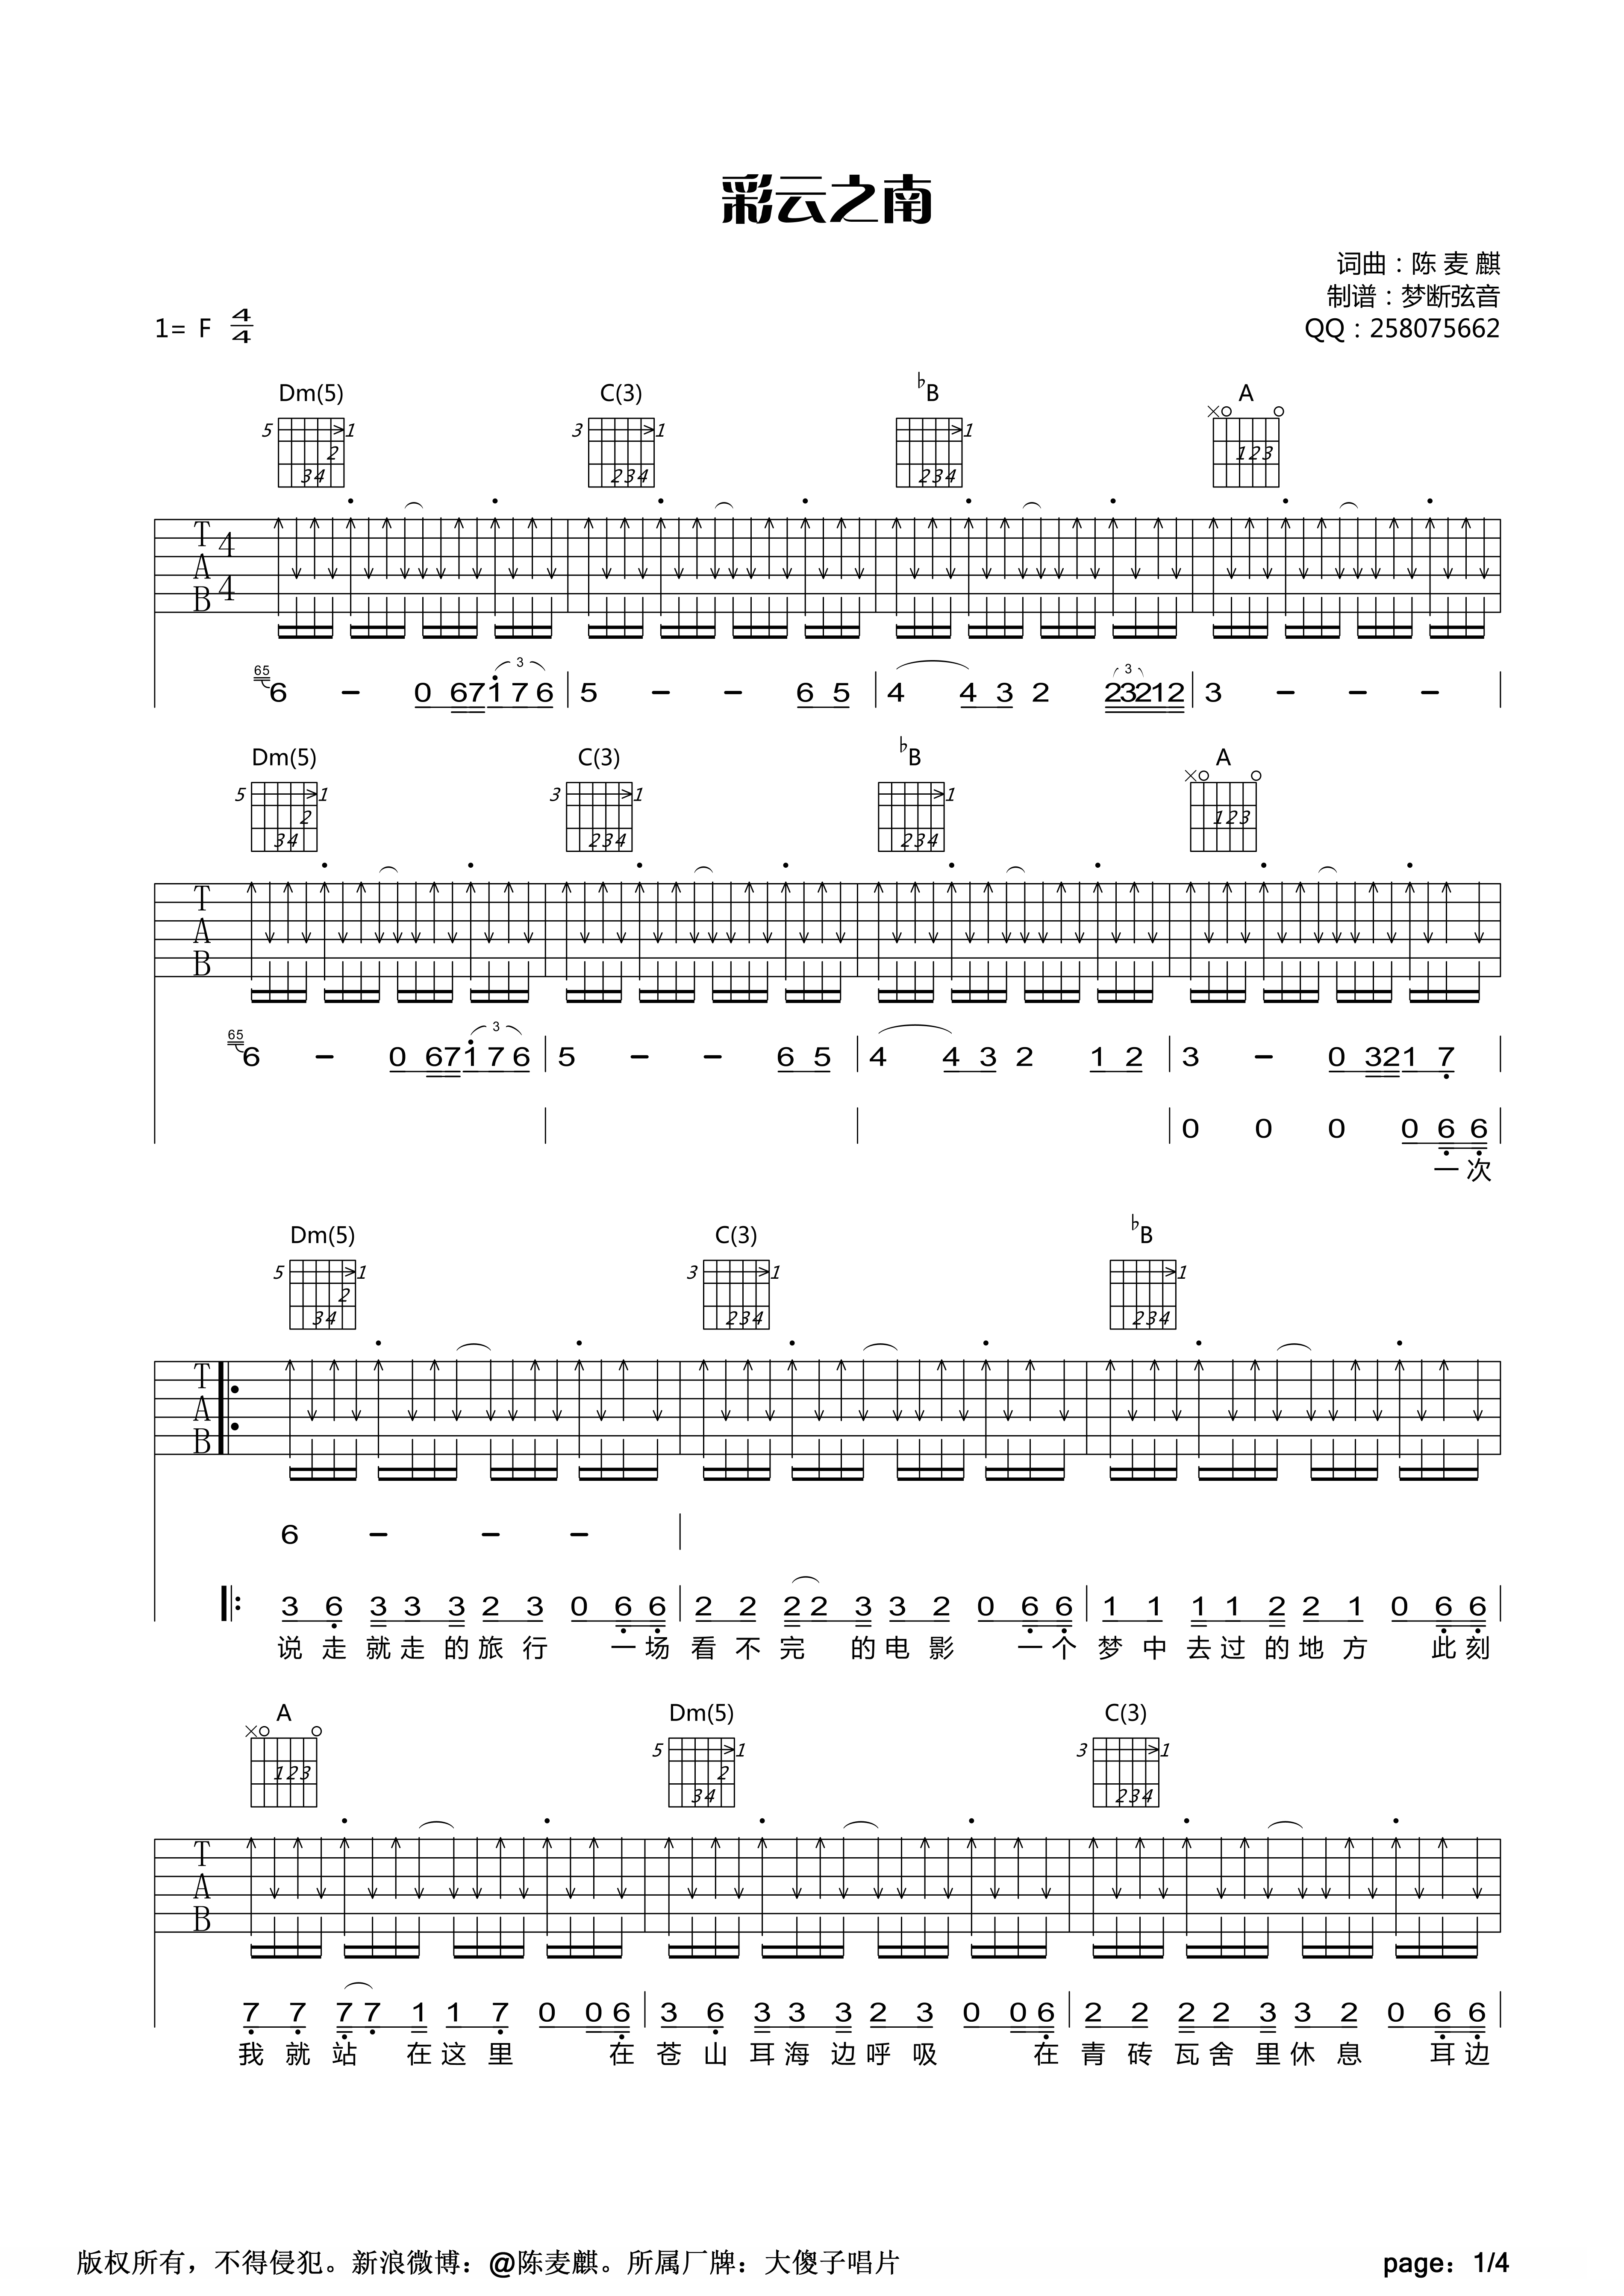 王鹰民谣吉他标准教程 七级曲目 1 《十年》和声分析 转位和弦 和弦借用_哔哩哔哩_bilibili